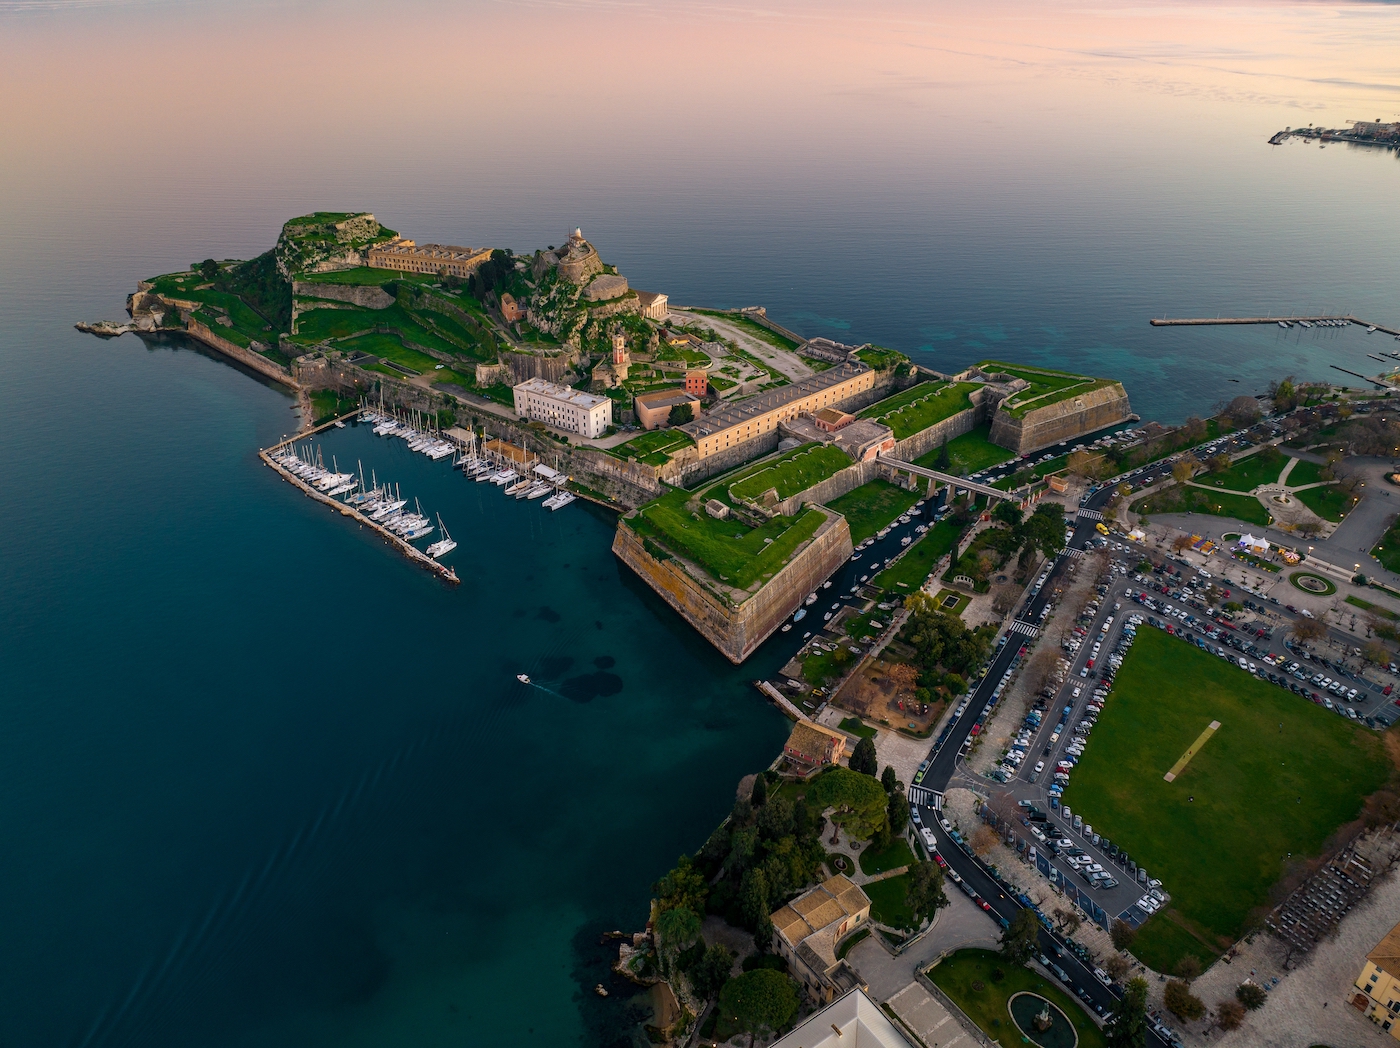 Het Venetiaanse fort op Corfu van bovenaf gezien